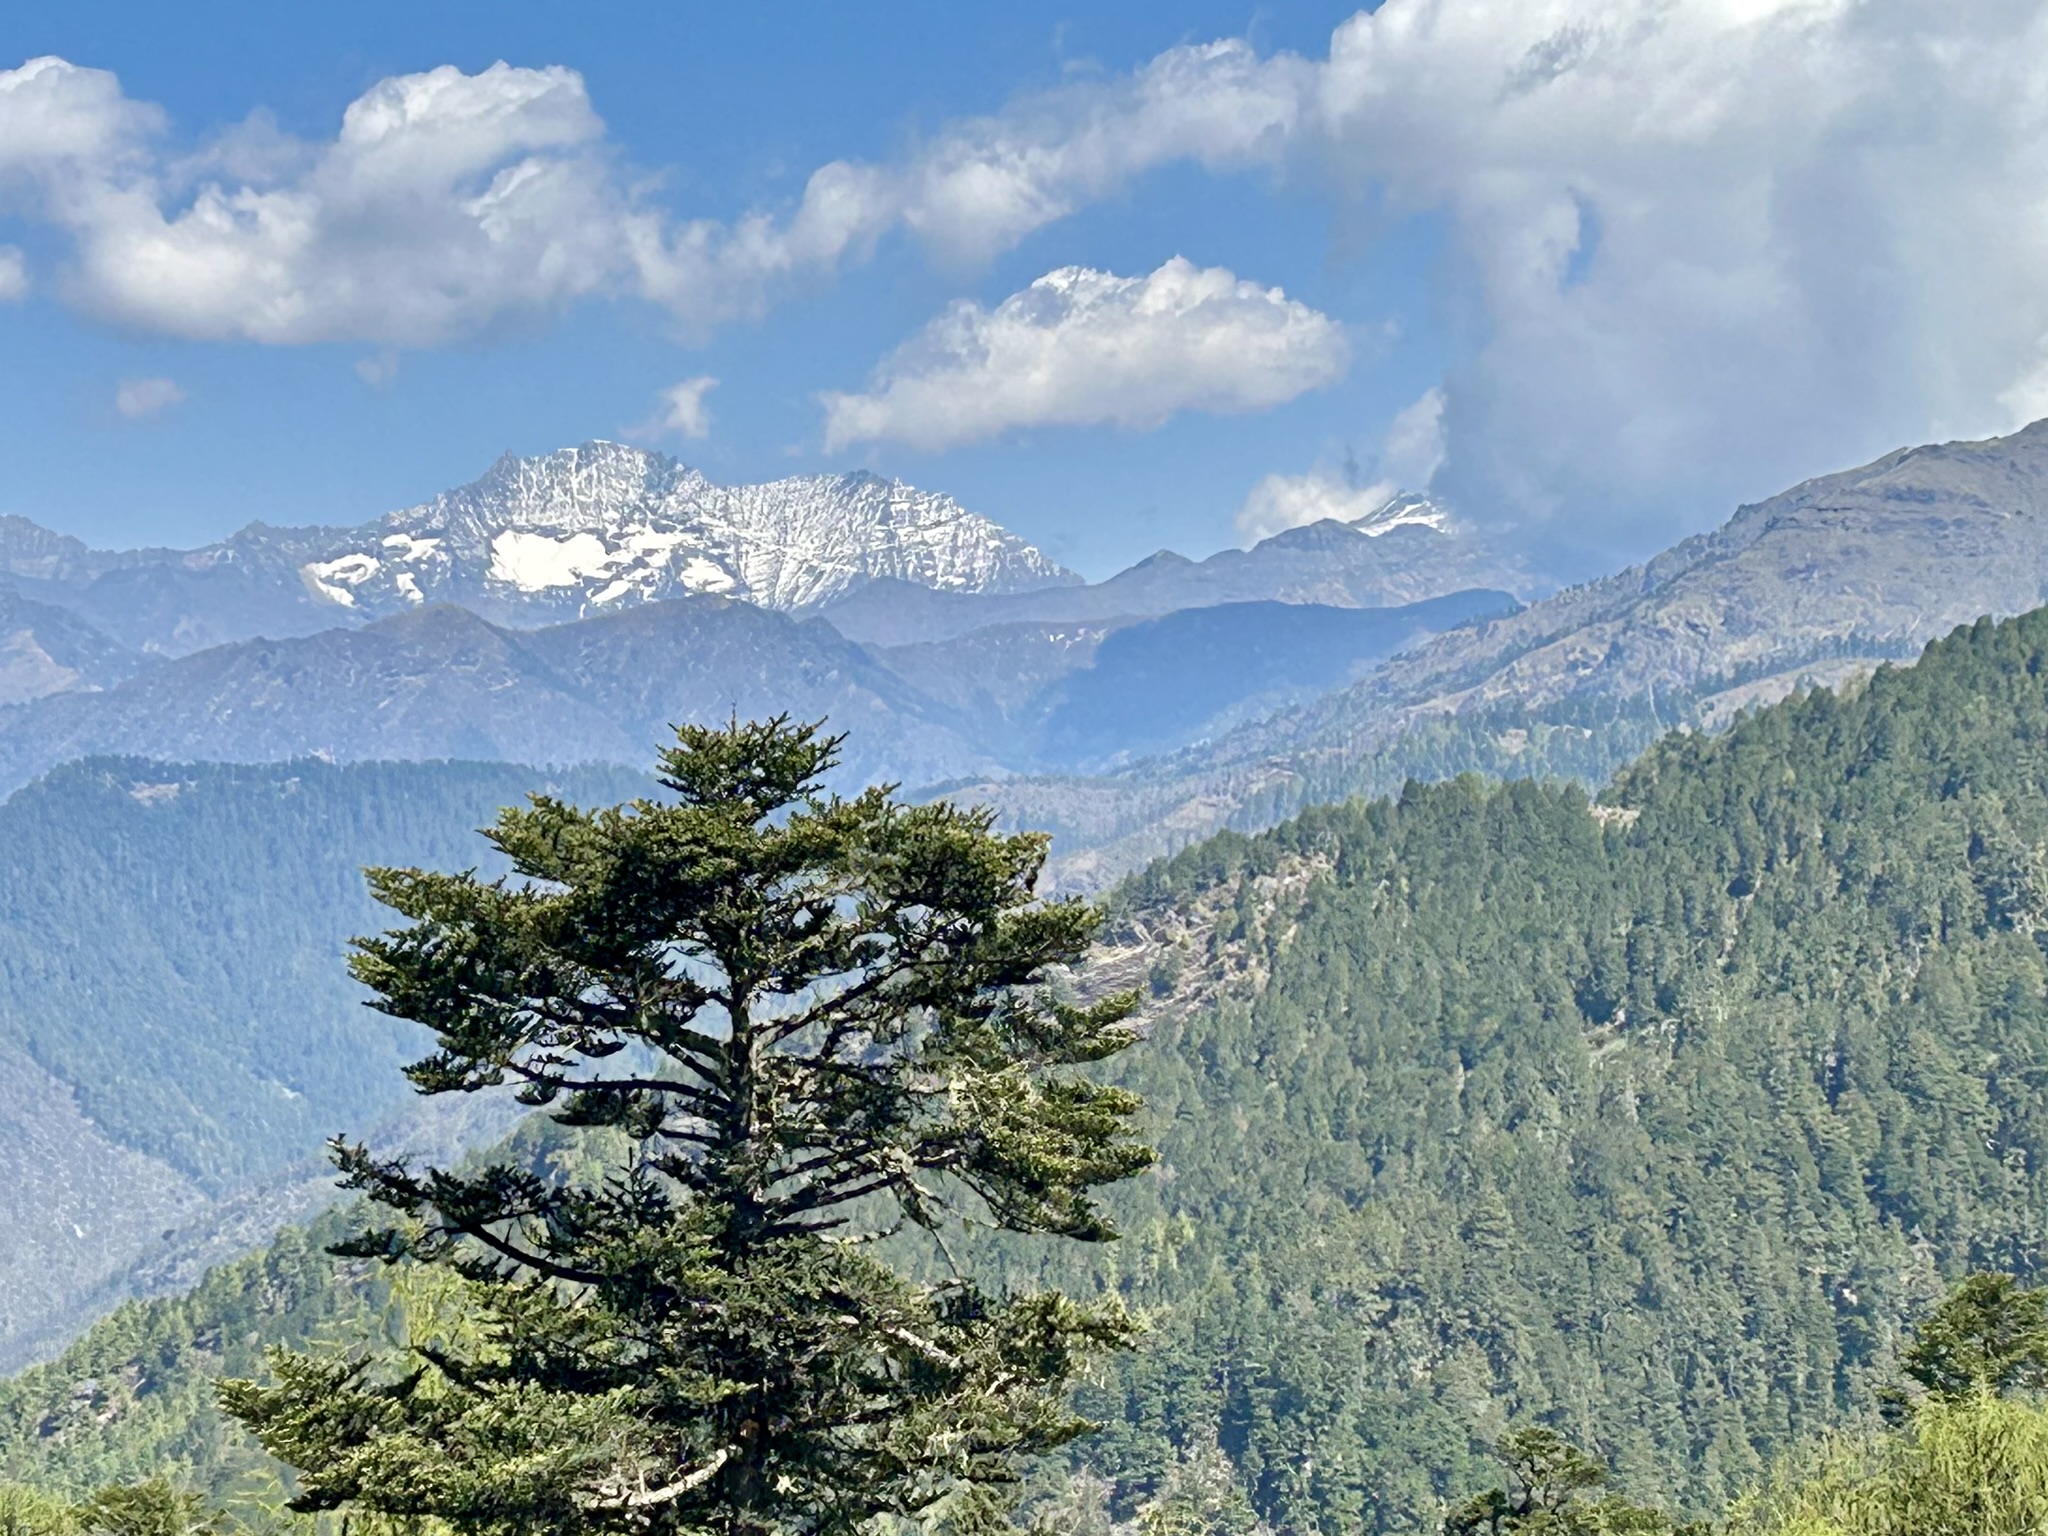 Uitzicht vlakbij Chele La Pass in Bhutan